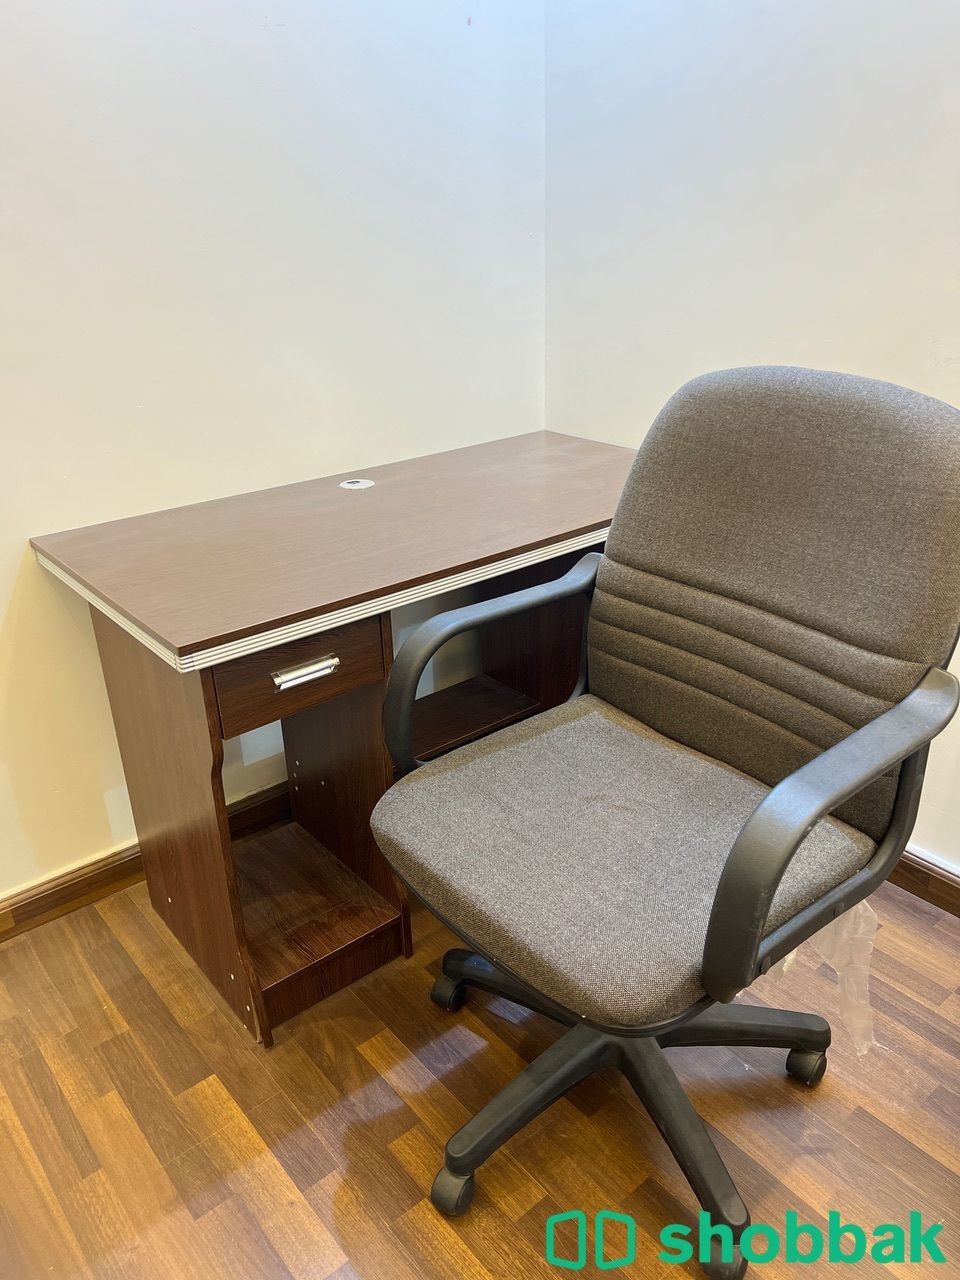 مكتب و كرسي للبيع شباك السعودية